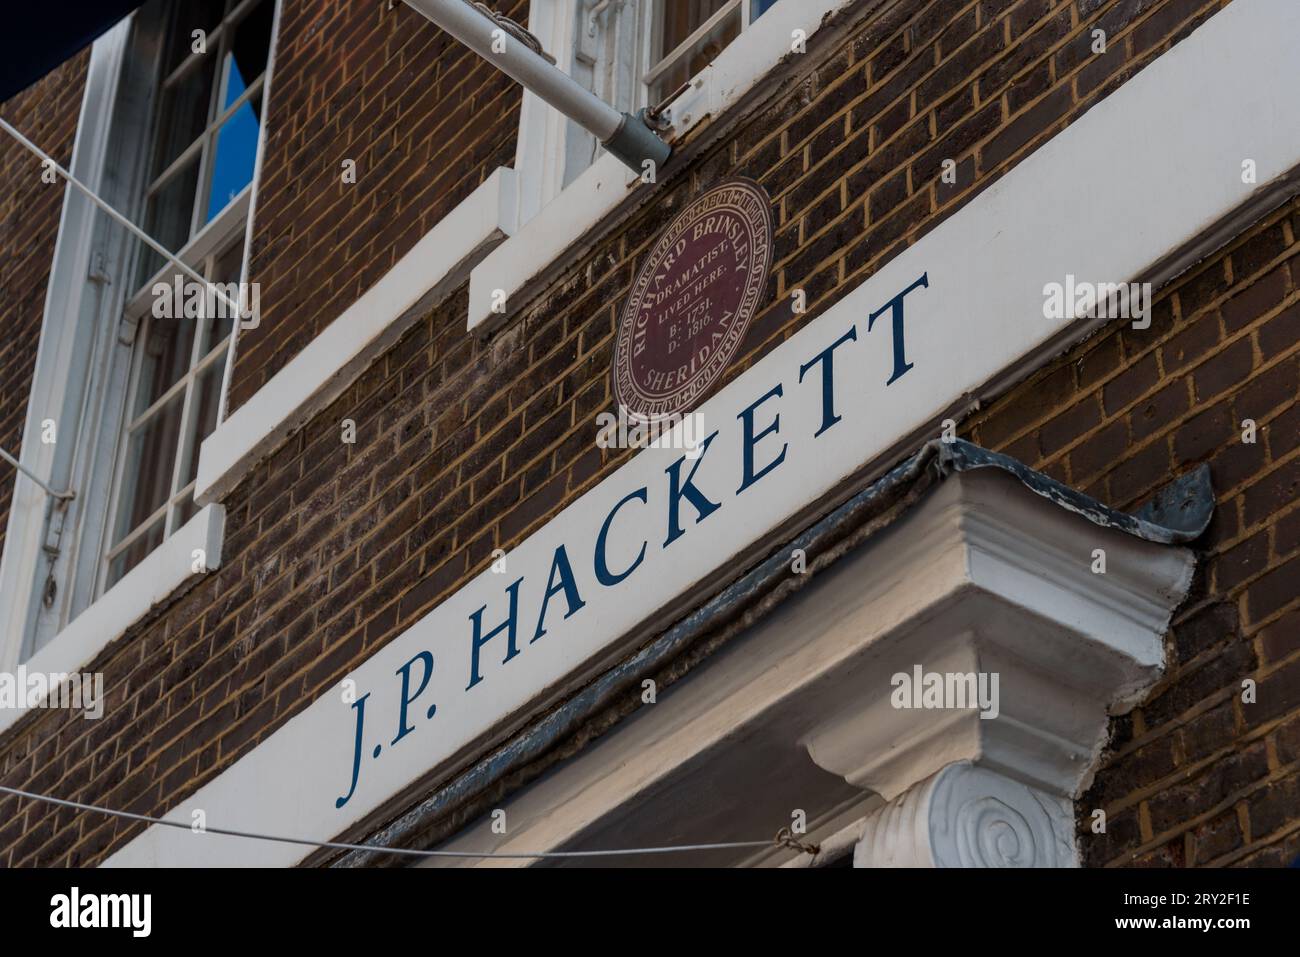 Londres, Royaume-Uni - 27 août 2023 : magasin de couture sur mesure J.P. Hackett à Savile Row Banque D'Images